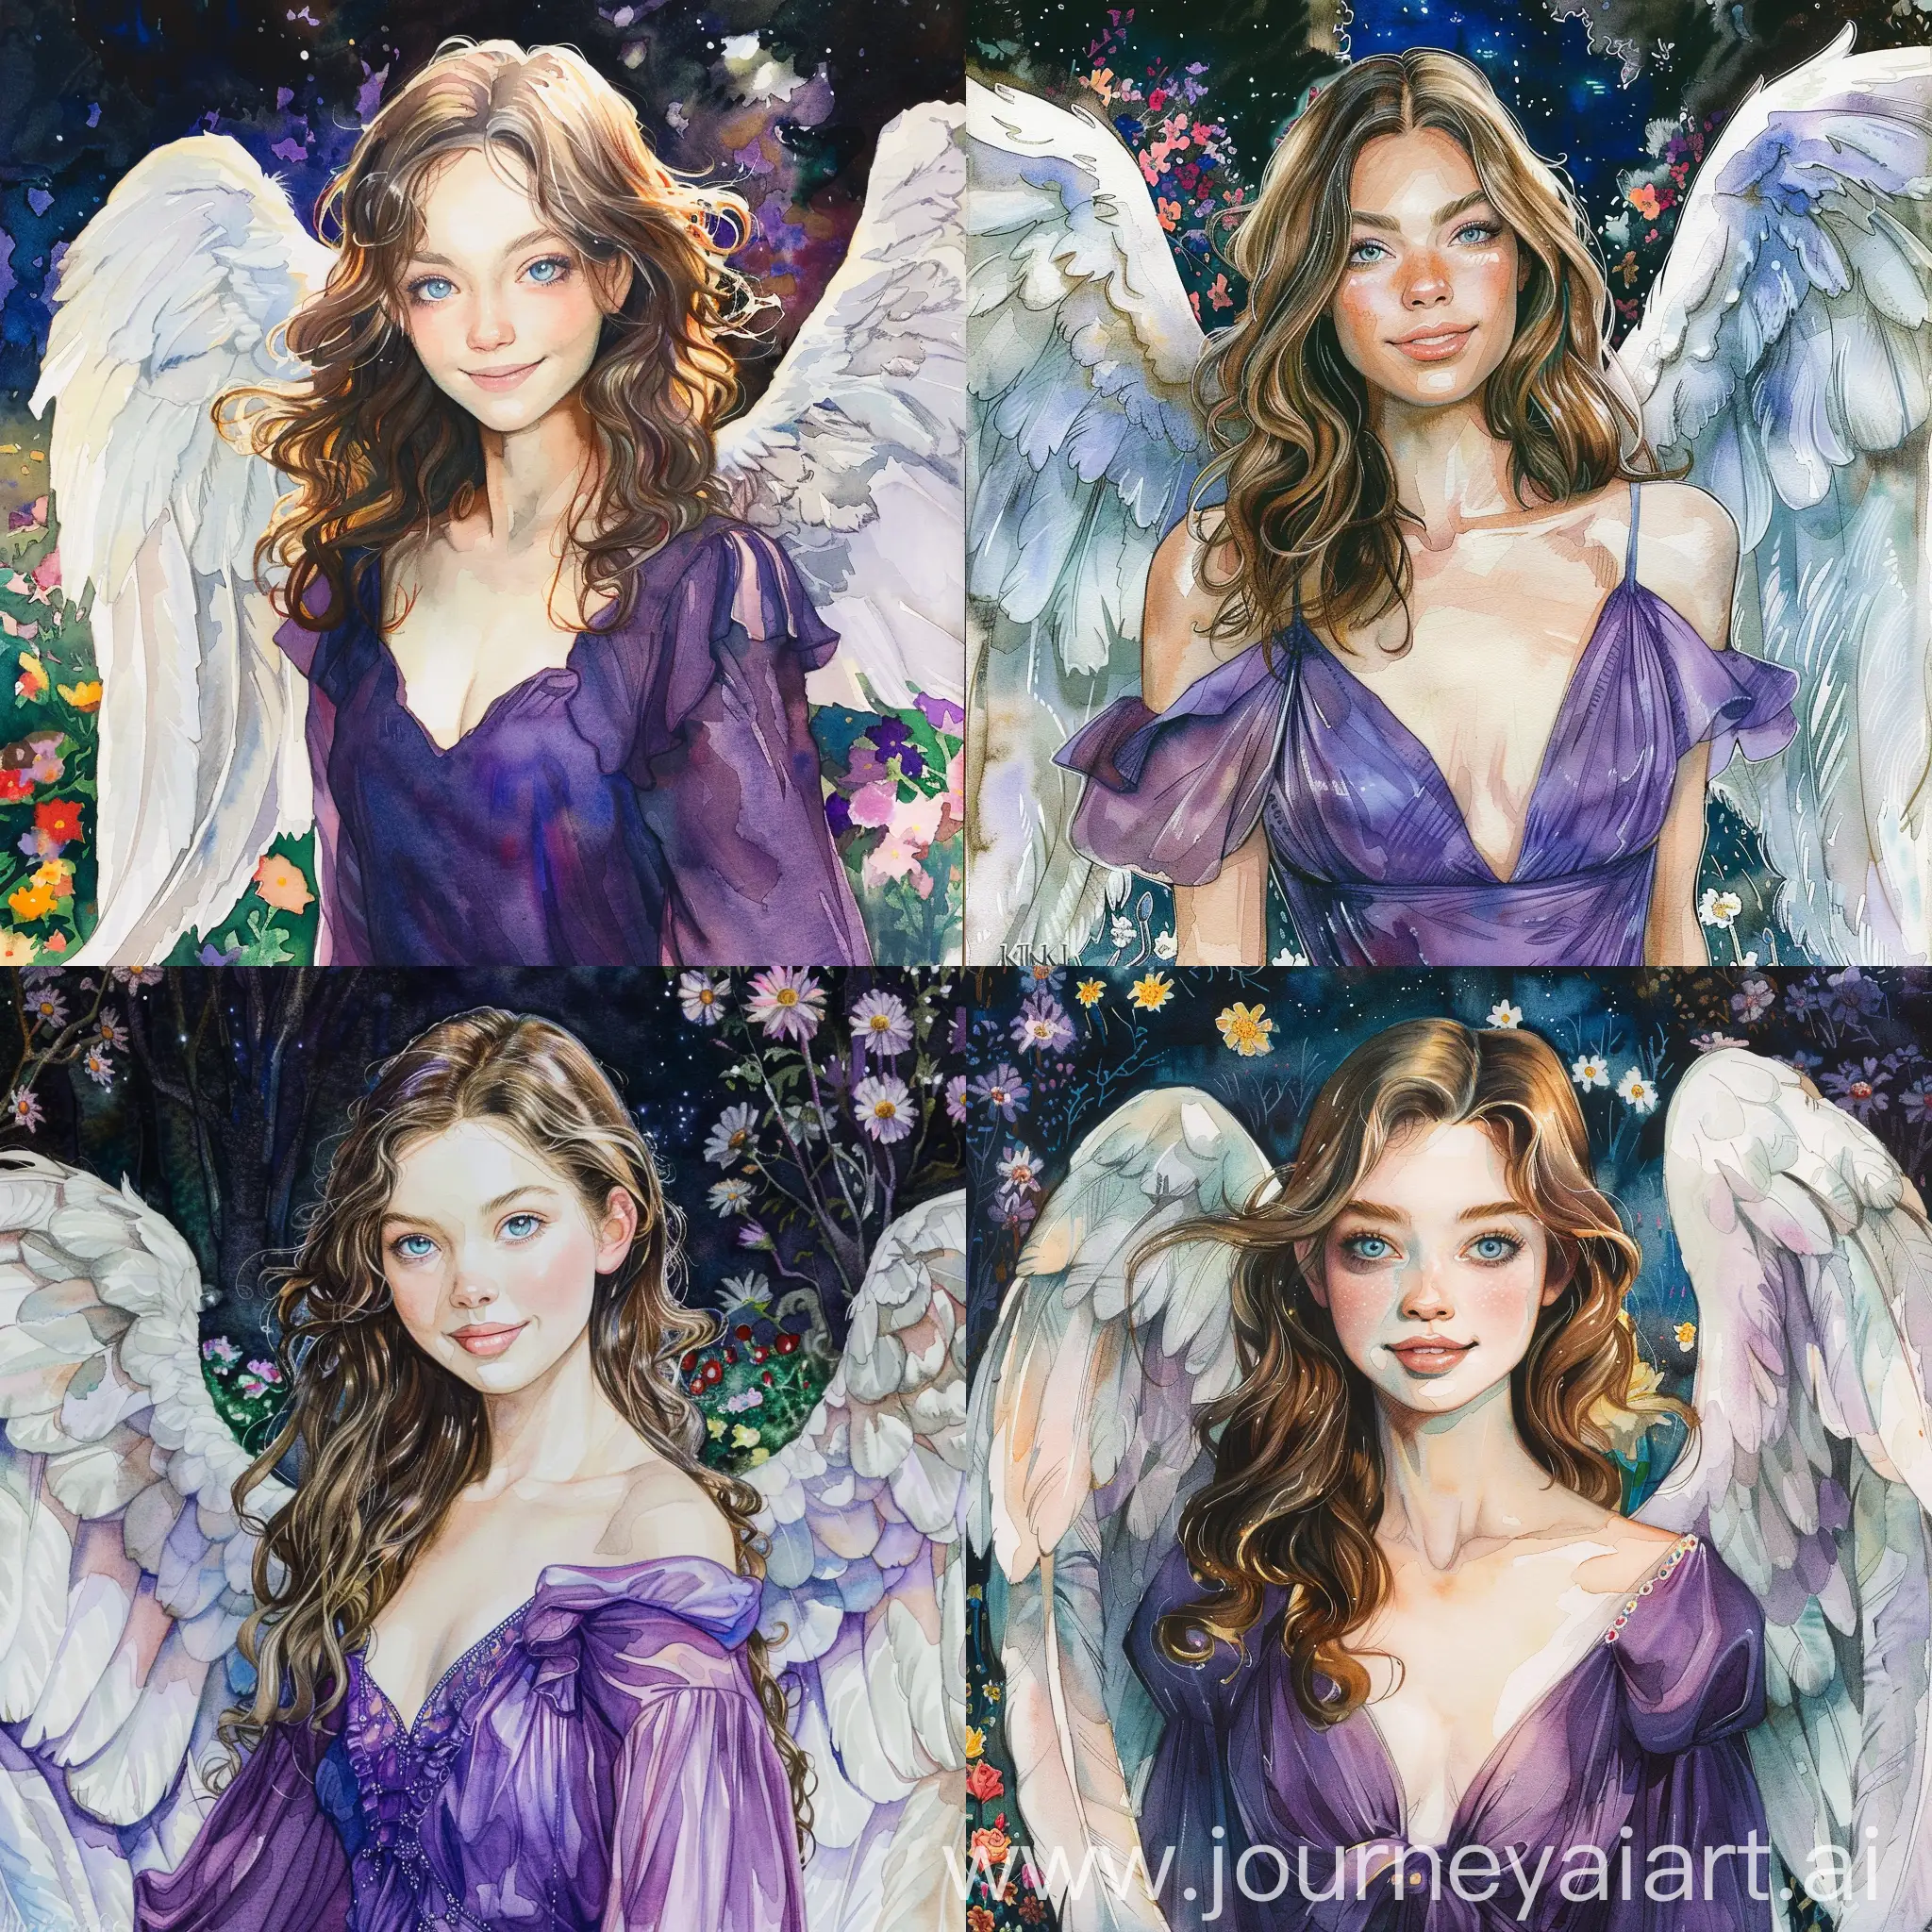 Graceful-Angel-Woman-with-Spread-Wings-in-Night-Garden-Portrait